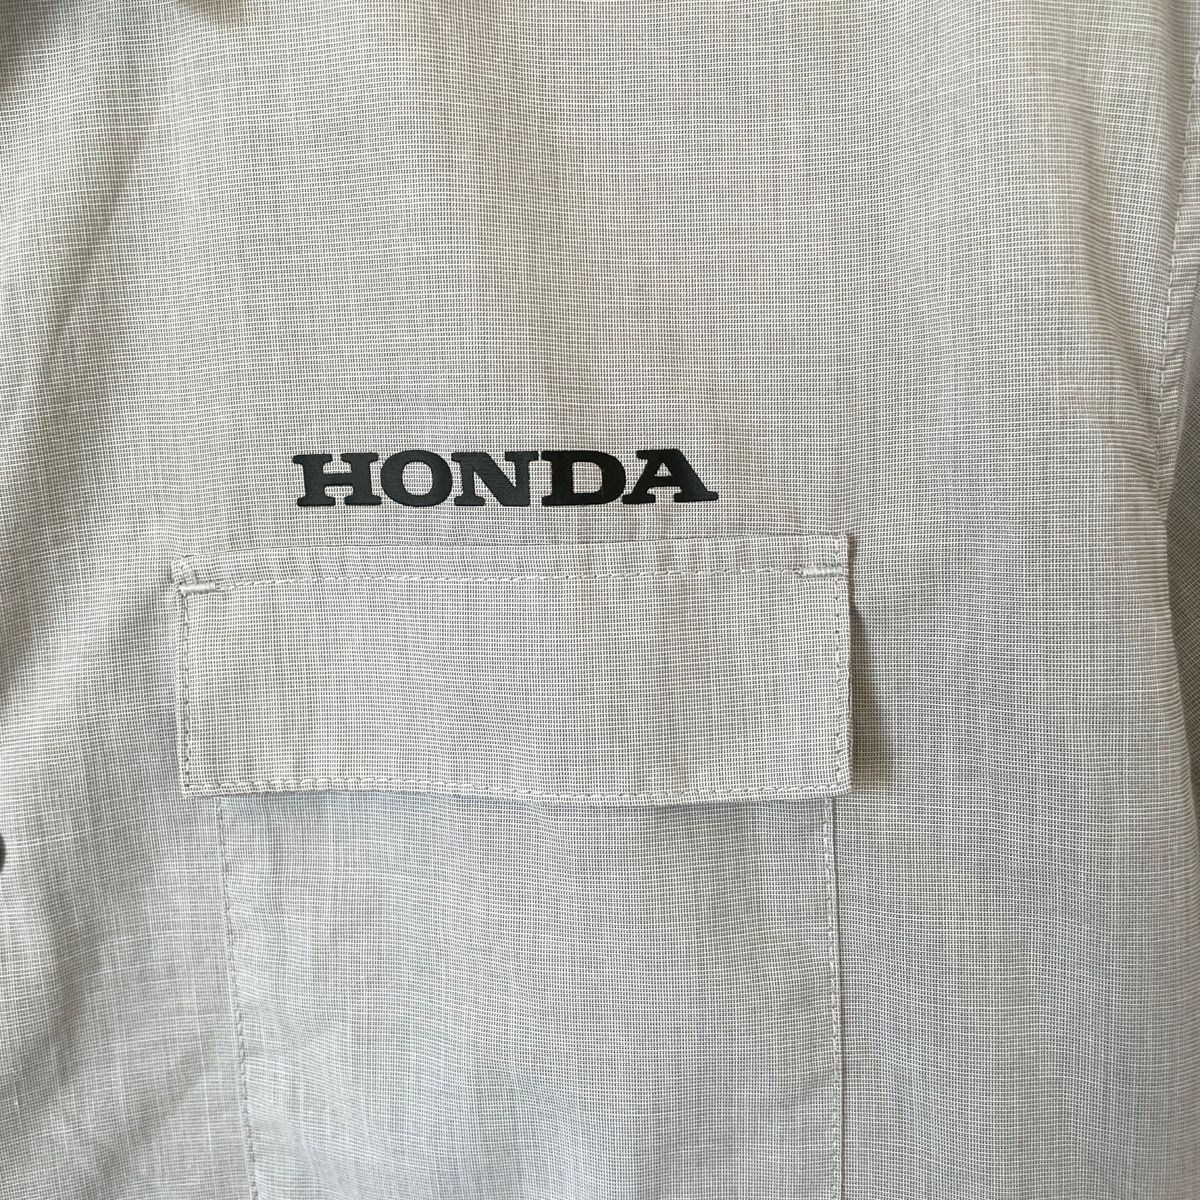 【GU×HONDA】ジーユー×ホンダ コラボ 半袖ワークシャツ 企業物 メンズ 匿名配送 薄灰色 S